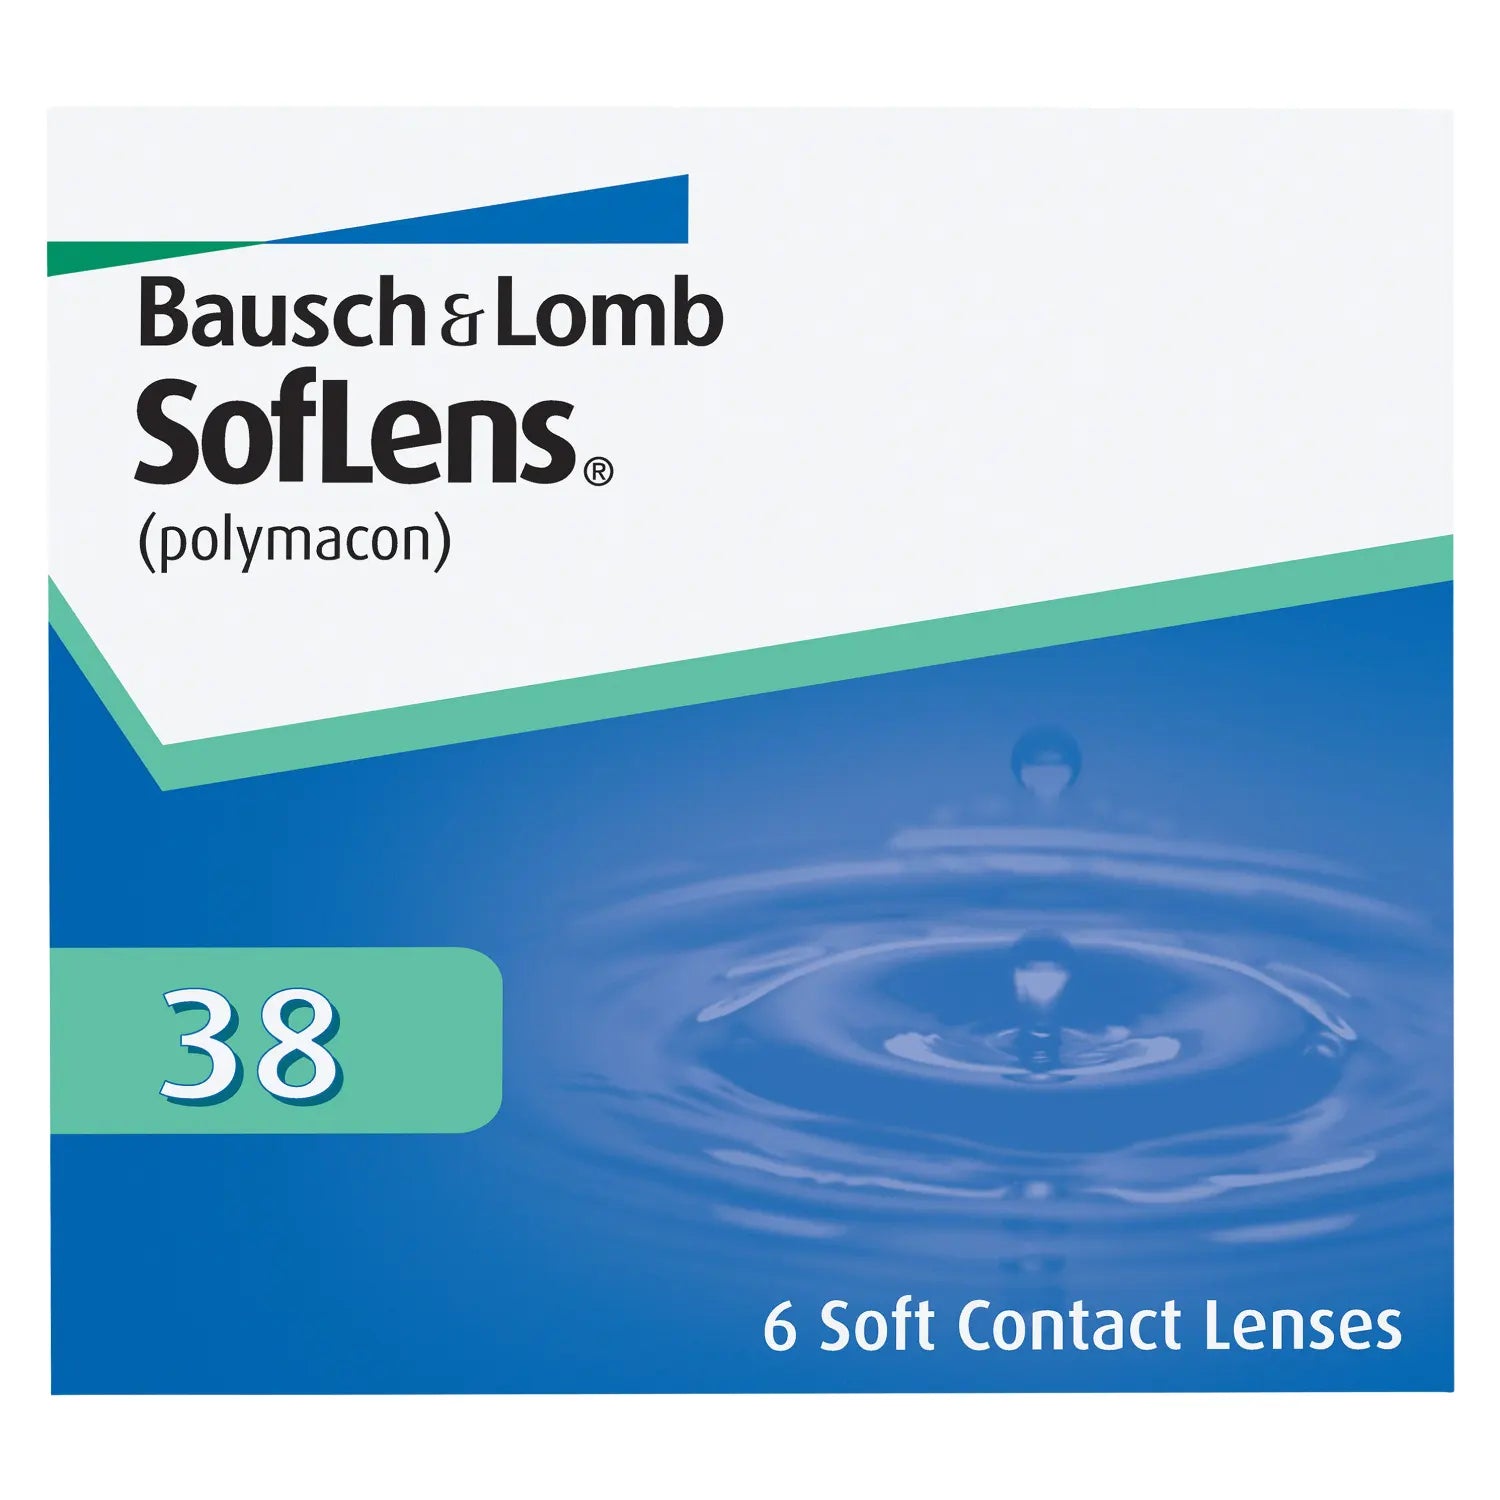 SofLens contact lenses